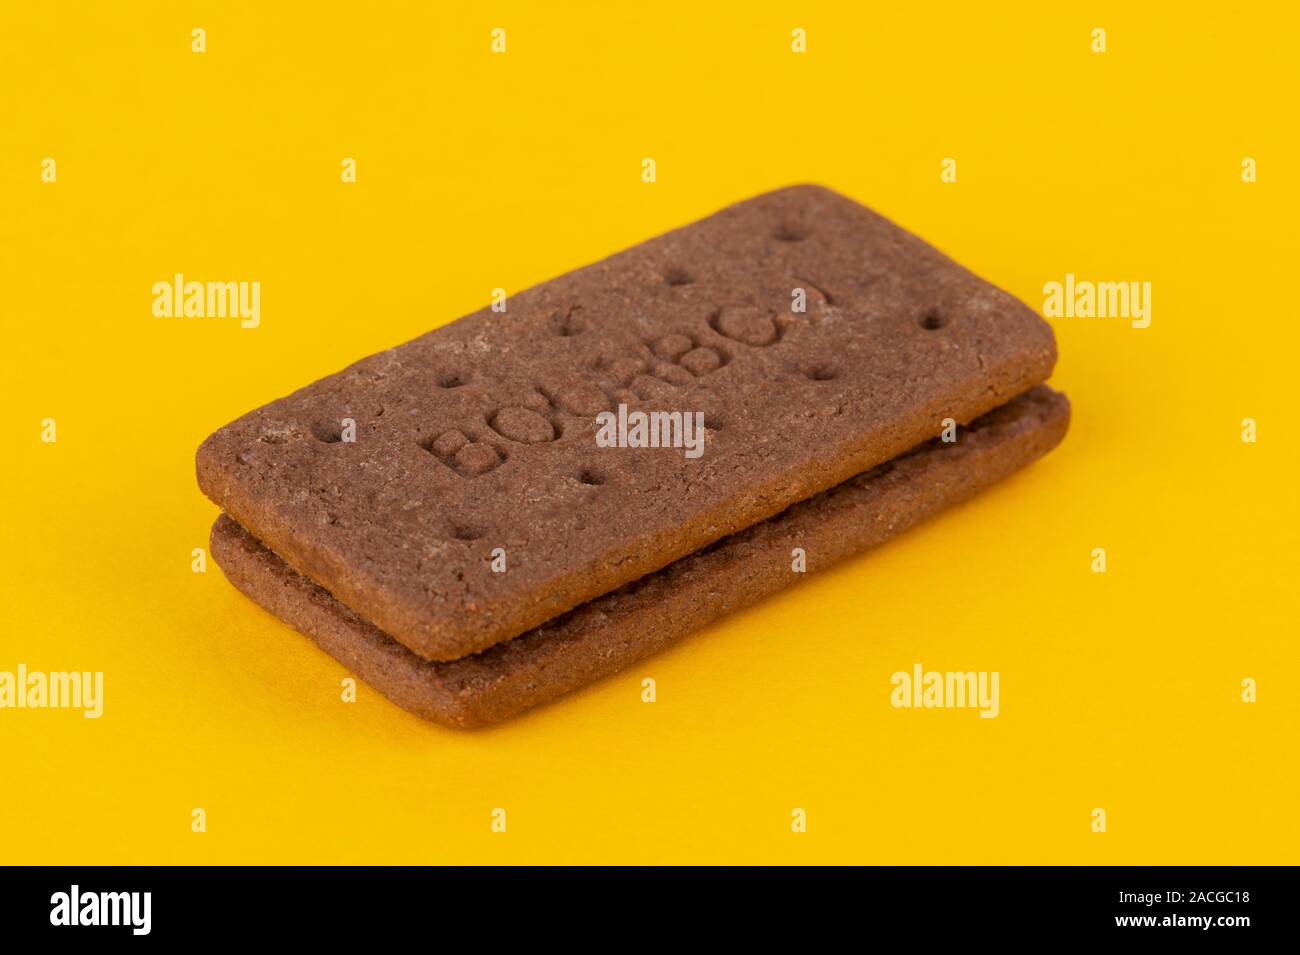 Eine Schokolade, Bourbon keks Schuß auf einen gelben Hintergrund. Stockfoto